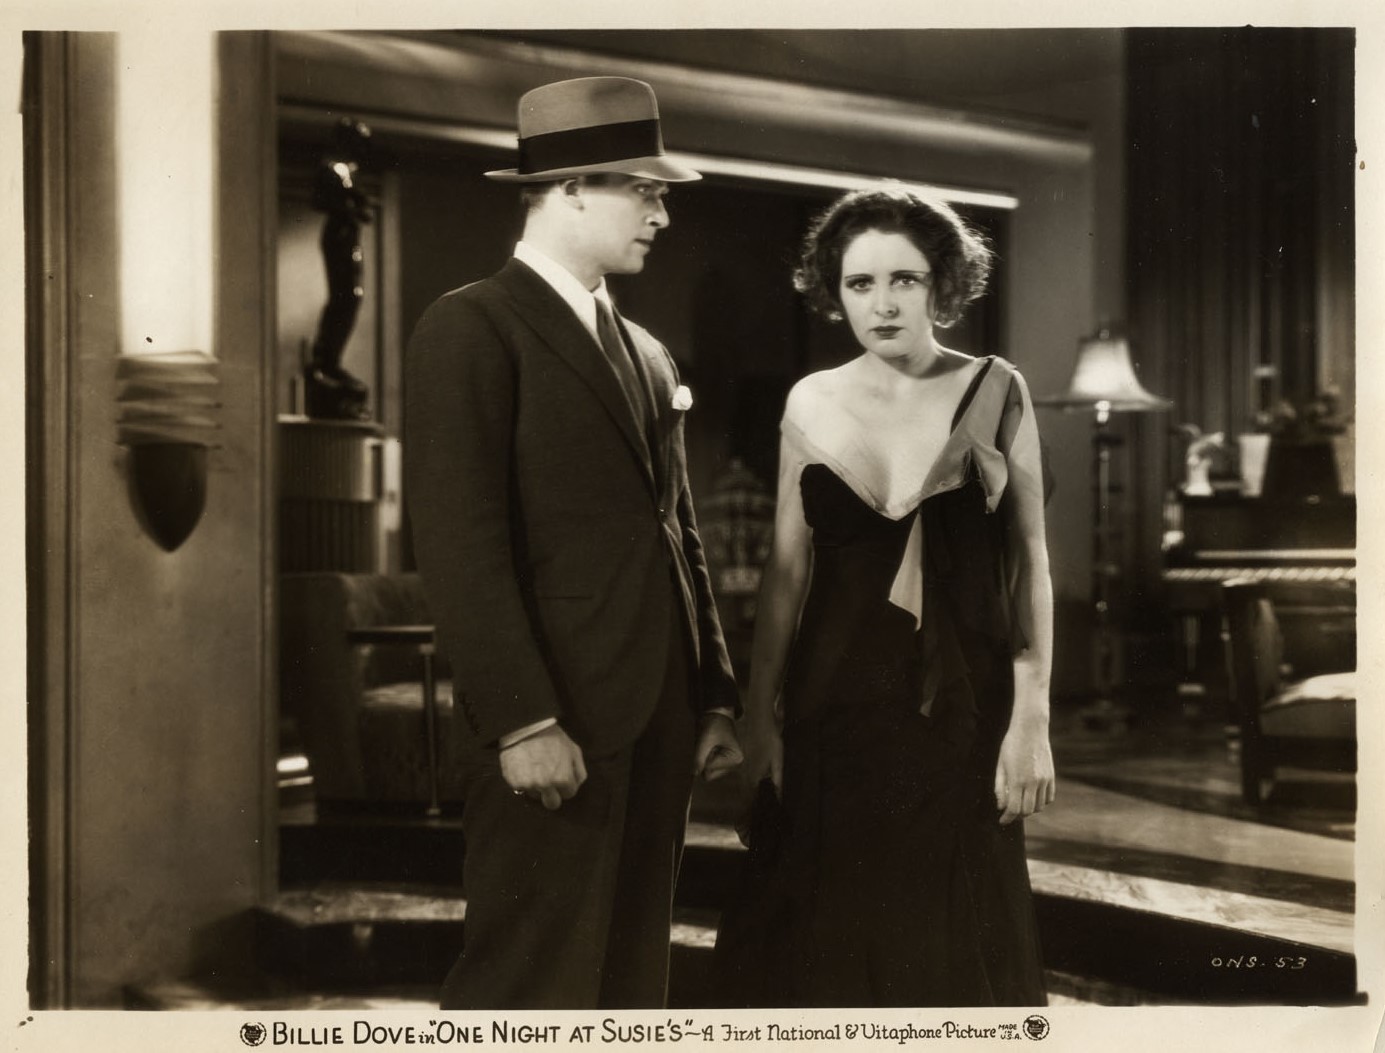 One Night at Susie's (1930) Screenshot 2 